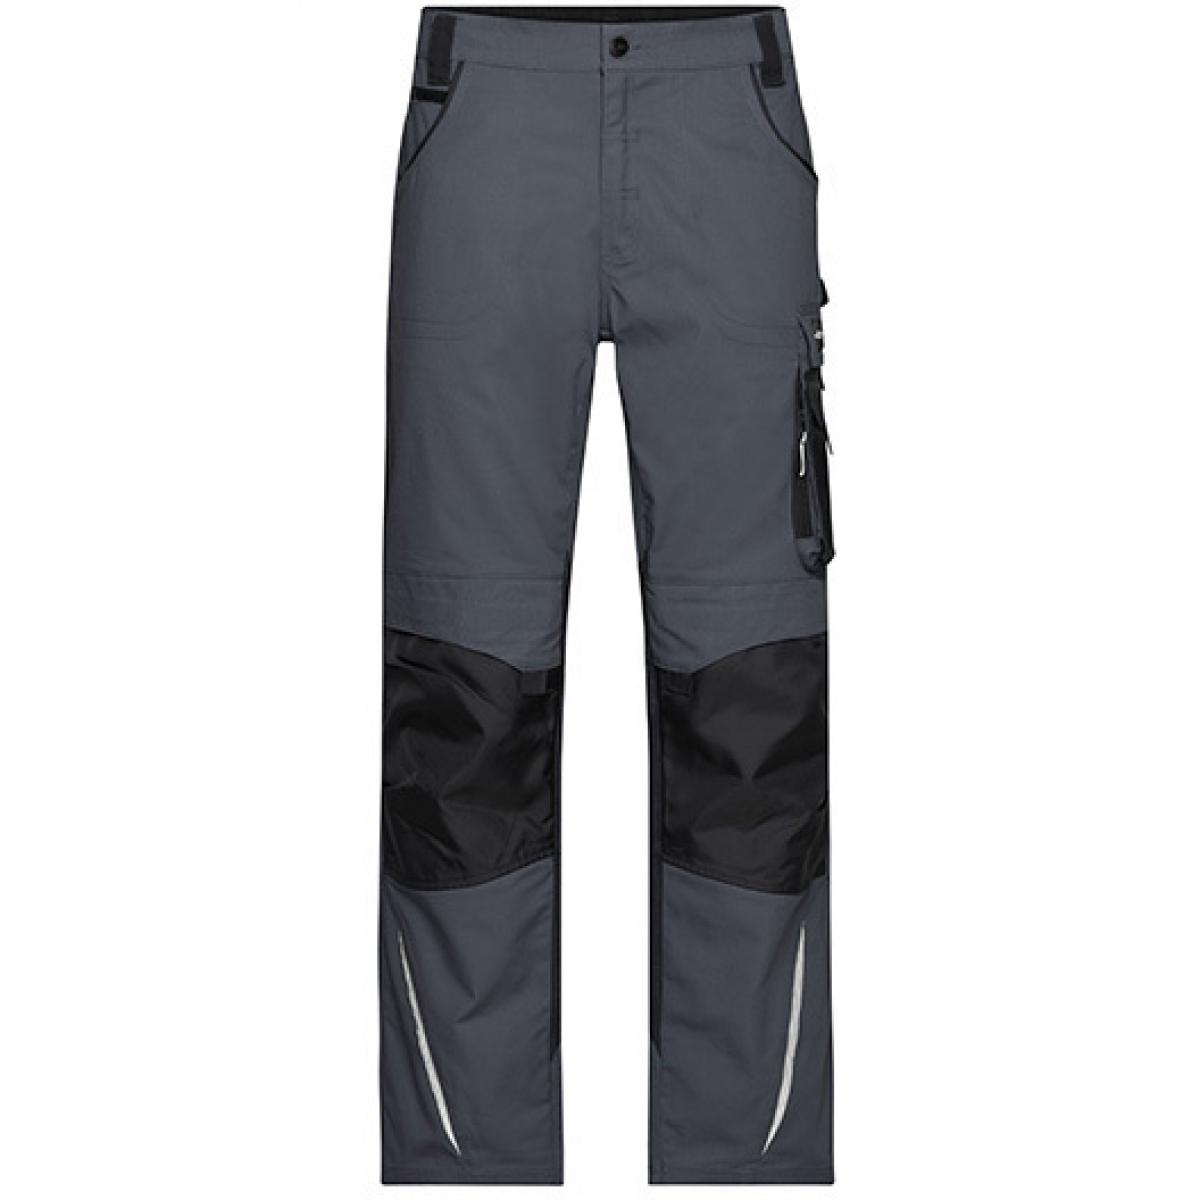 Hersteller: James+Nicholson Herstellernummer: JN832 Artikelbezeichnung: Workwear Pants -STRONG- / Arbeitshose lang Farbe: Carbon/Black